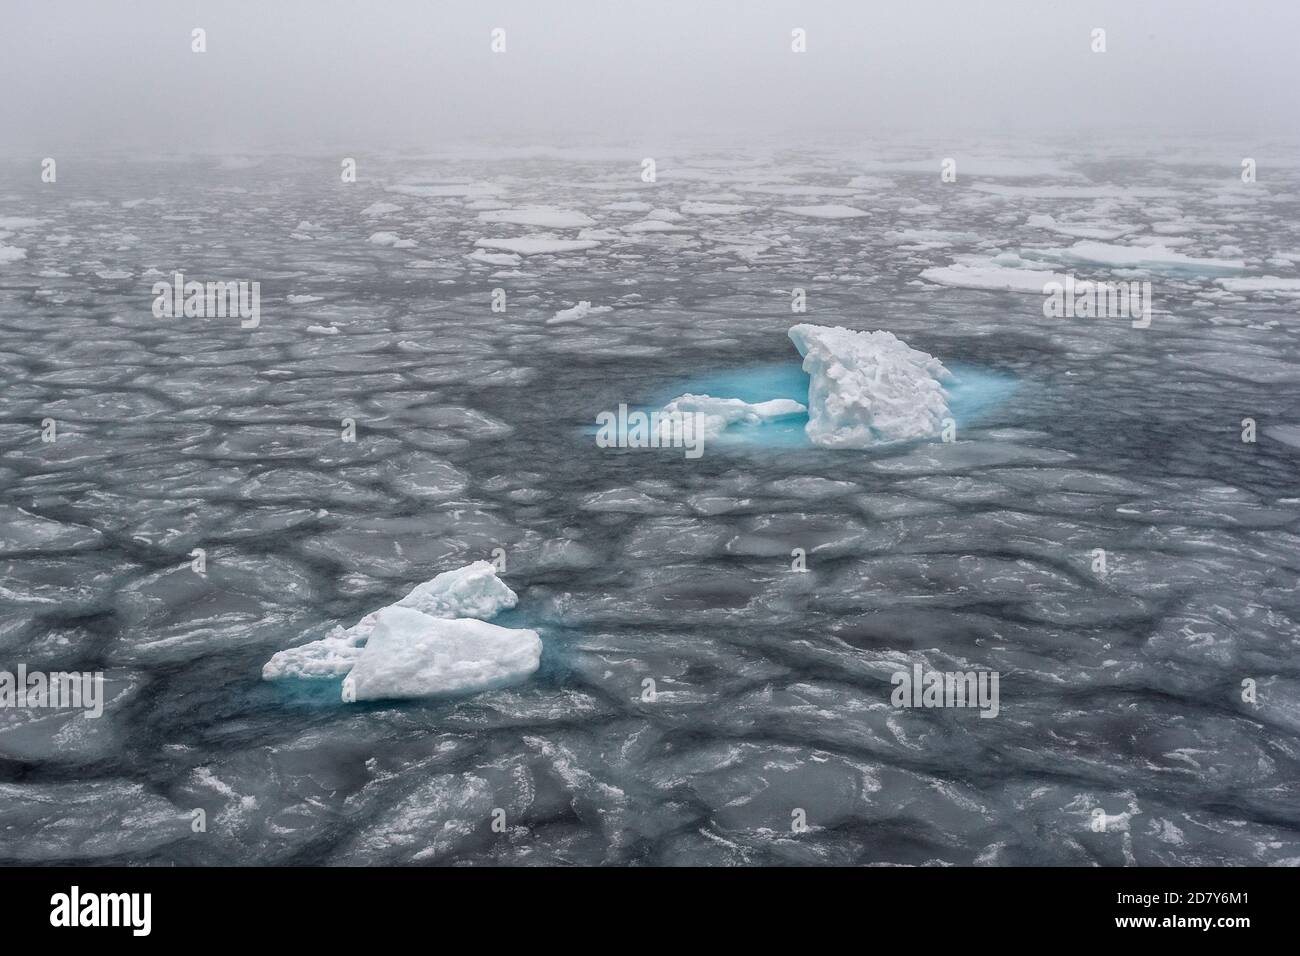 Ghiaccio in deriva nell'Oceano Artico a Svalbard. Il pacco di ghiaccio sta galleggiando come una foglia di ghiaccio sul mare nel cerchio artico a nord di Svalbard, Spitsbergen. Foto Stock